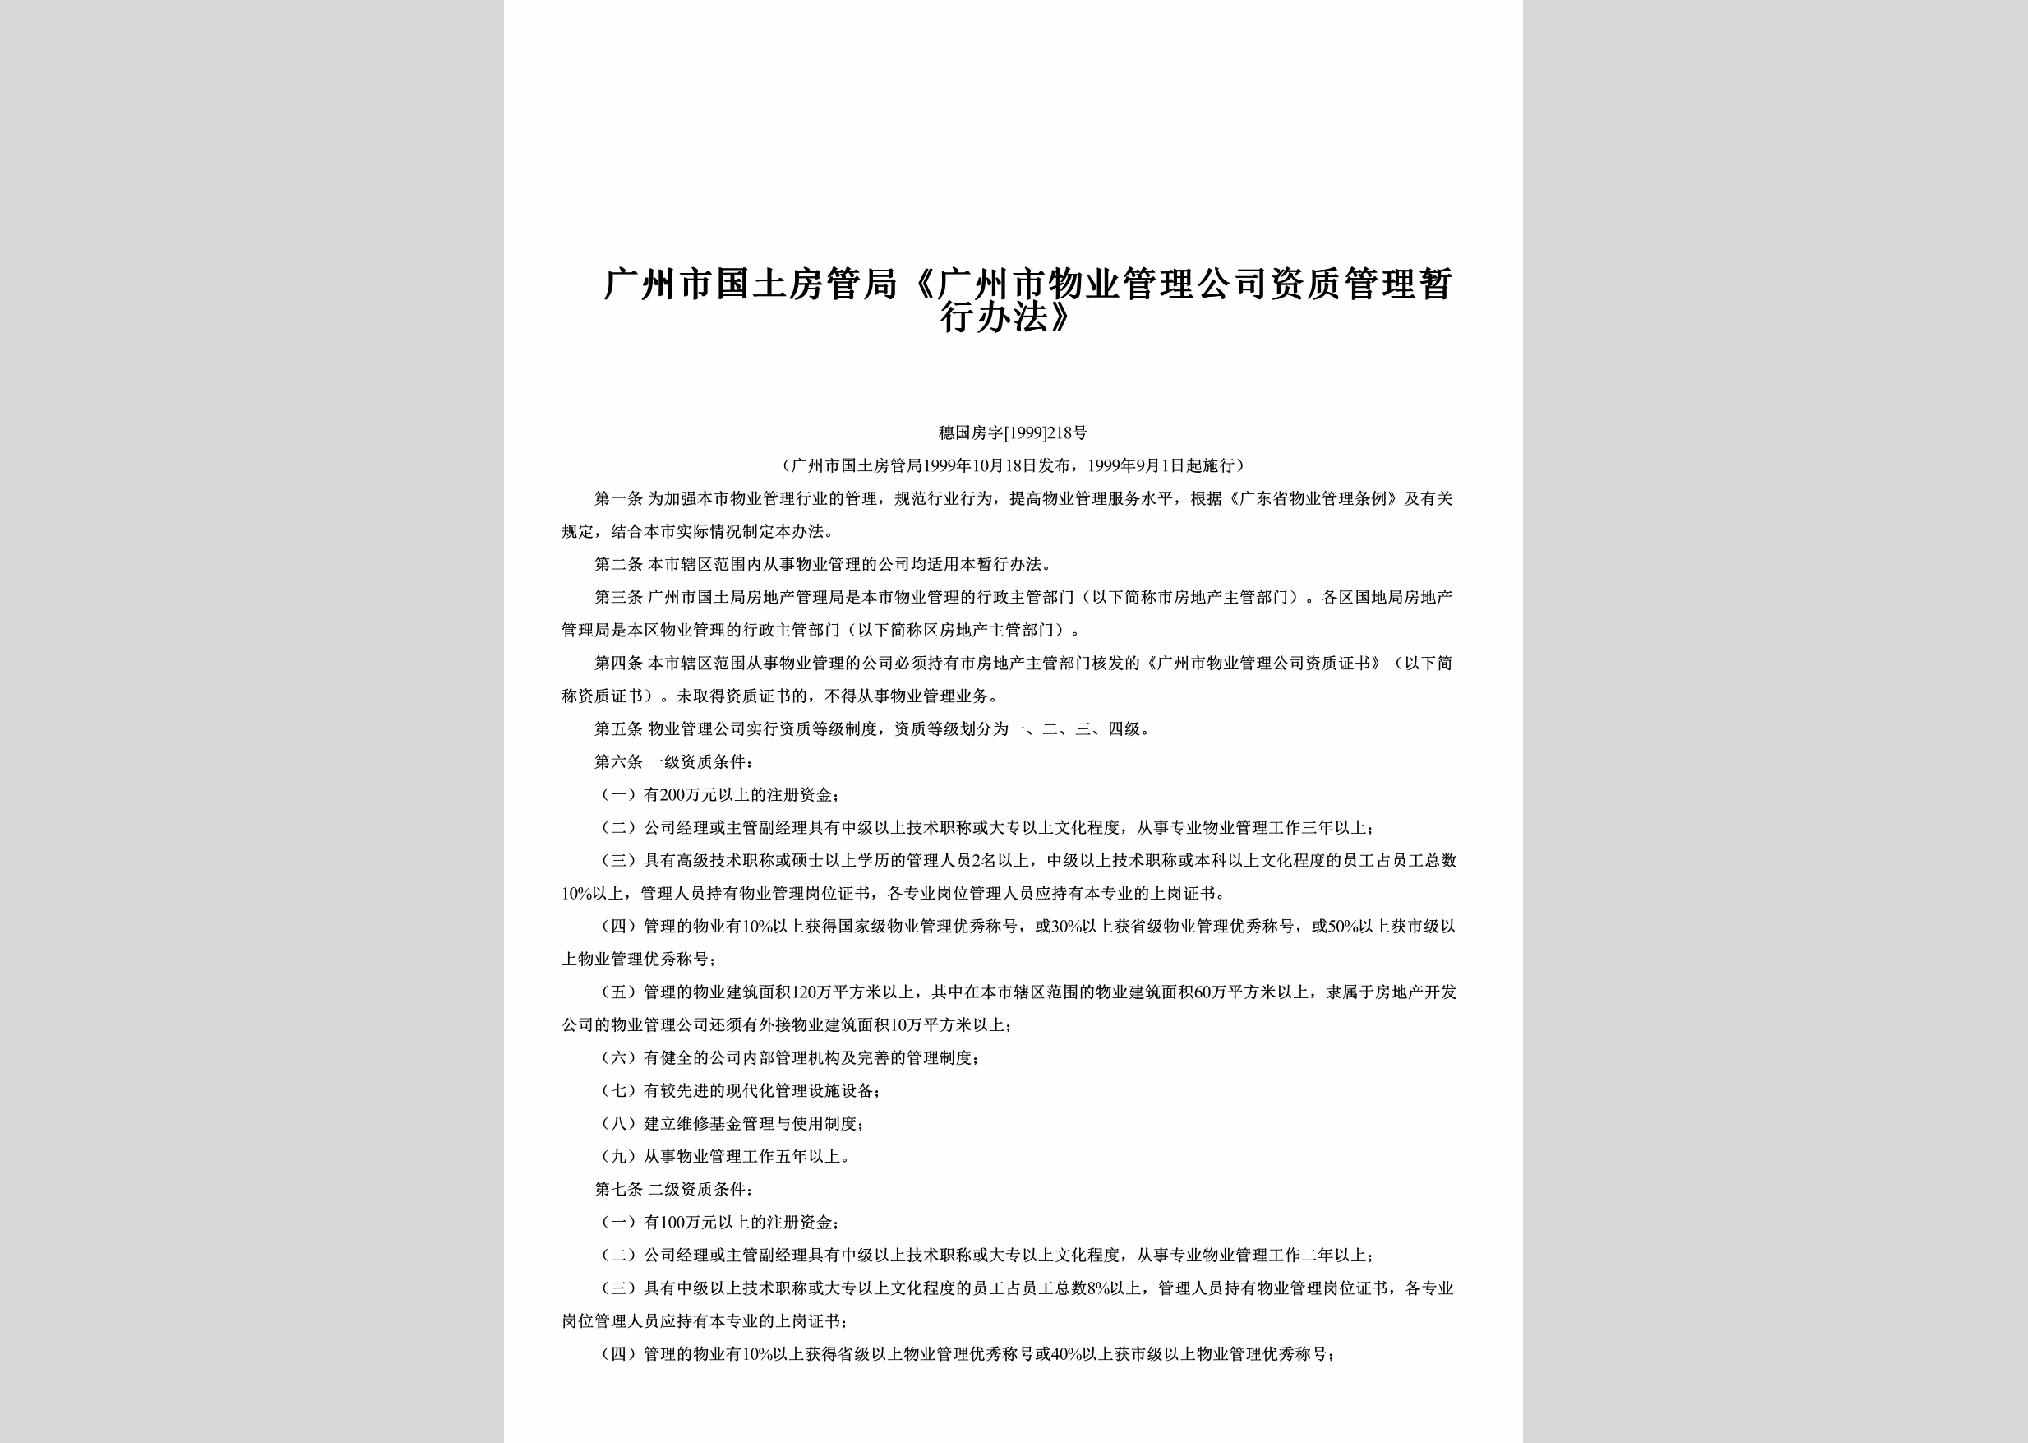 穗国房字[1999]218号：《广州市物业管理公司资质管理暂行办法》